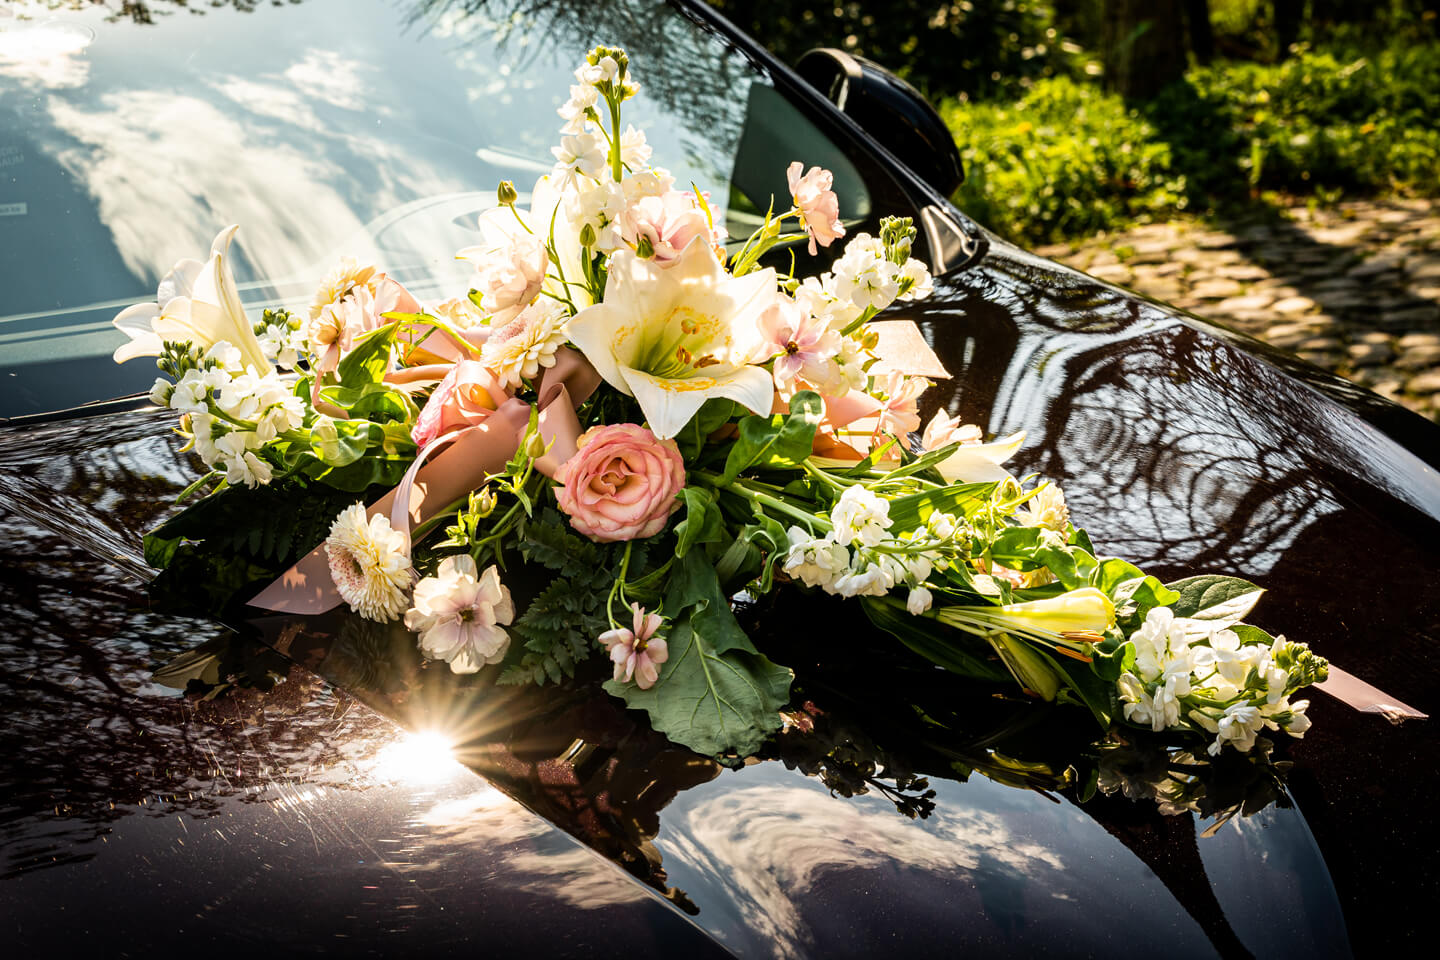 Blumenschmuck auf dem Hochzeitsauto im warmen Sonnenlicht.